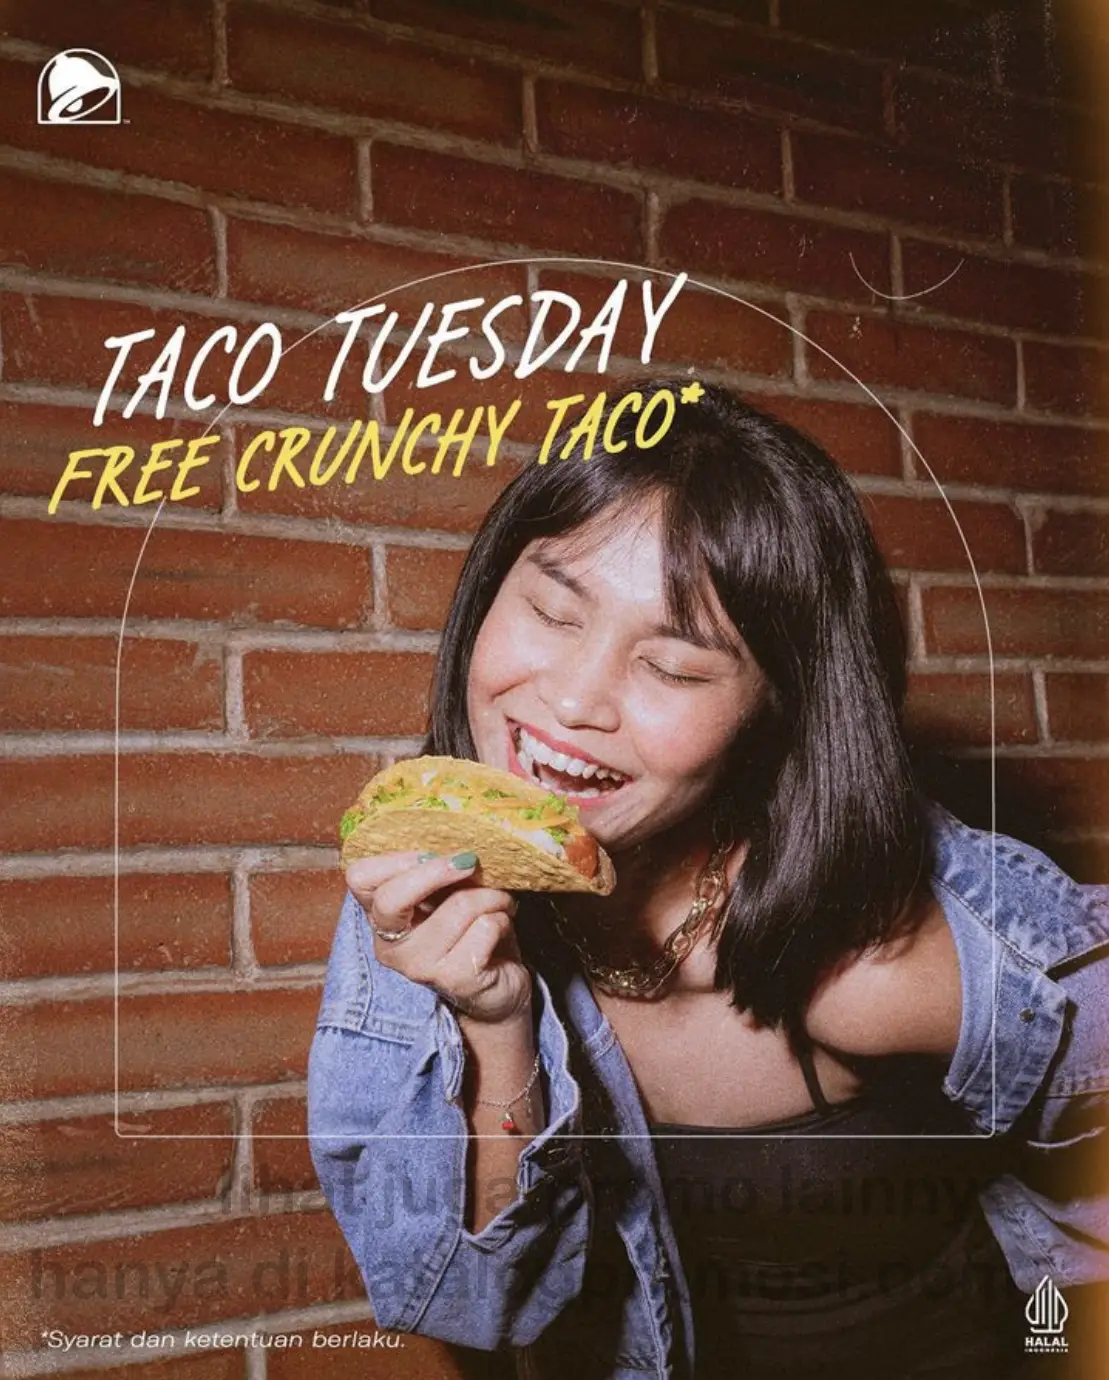 Promo TACO BELL TACO TUESDAY FREE Crunchy Taco